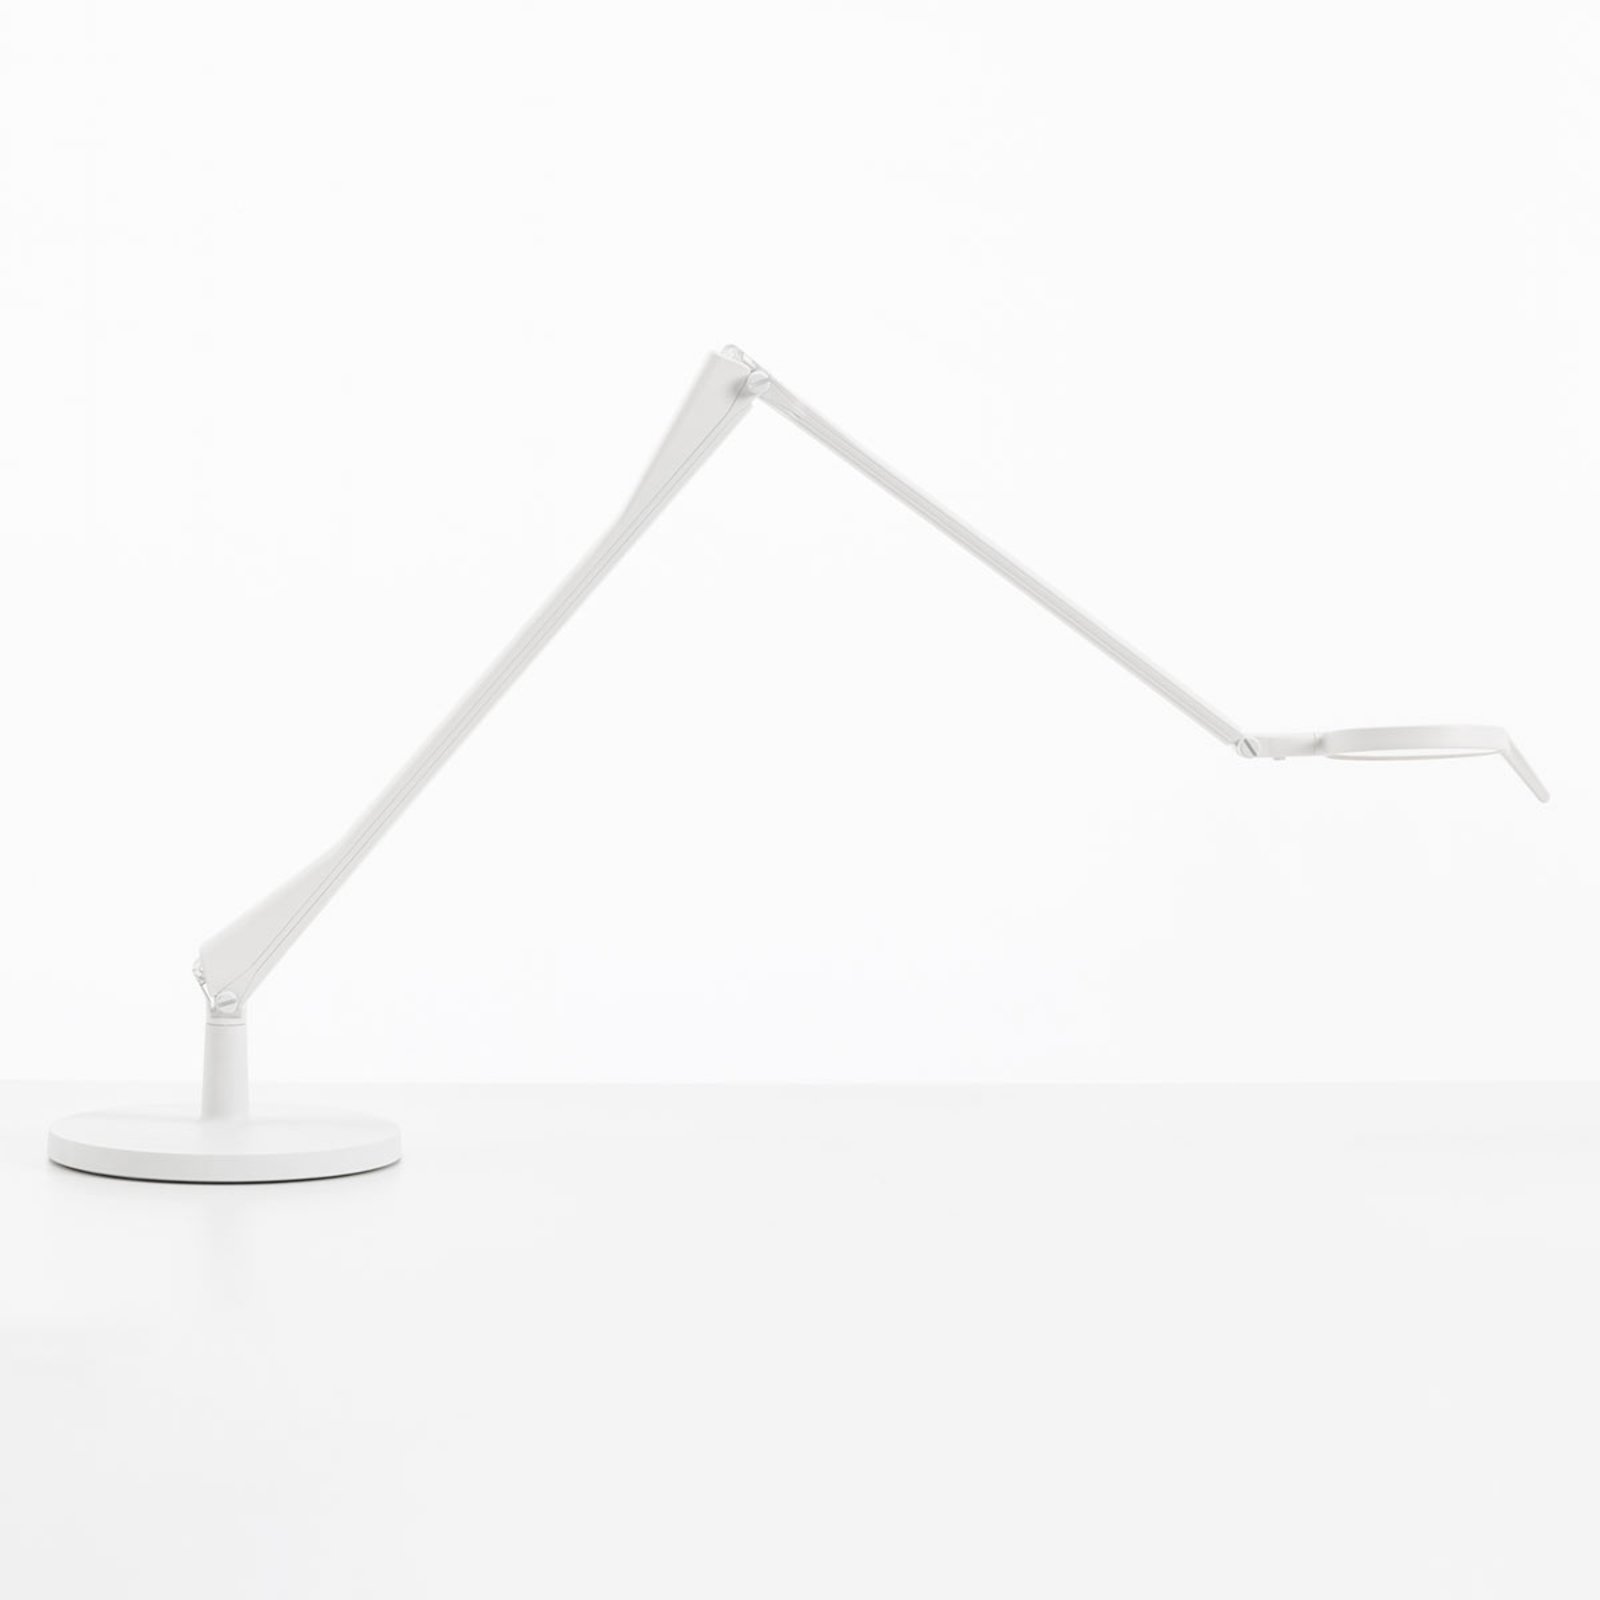 Kartell Aledin Tec LED table lamp, white